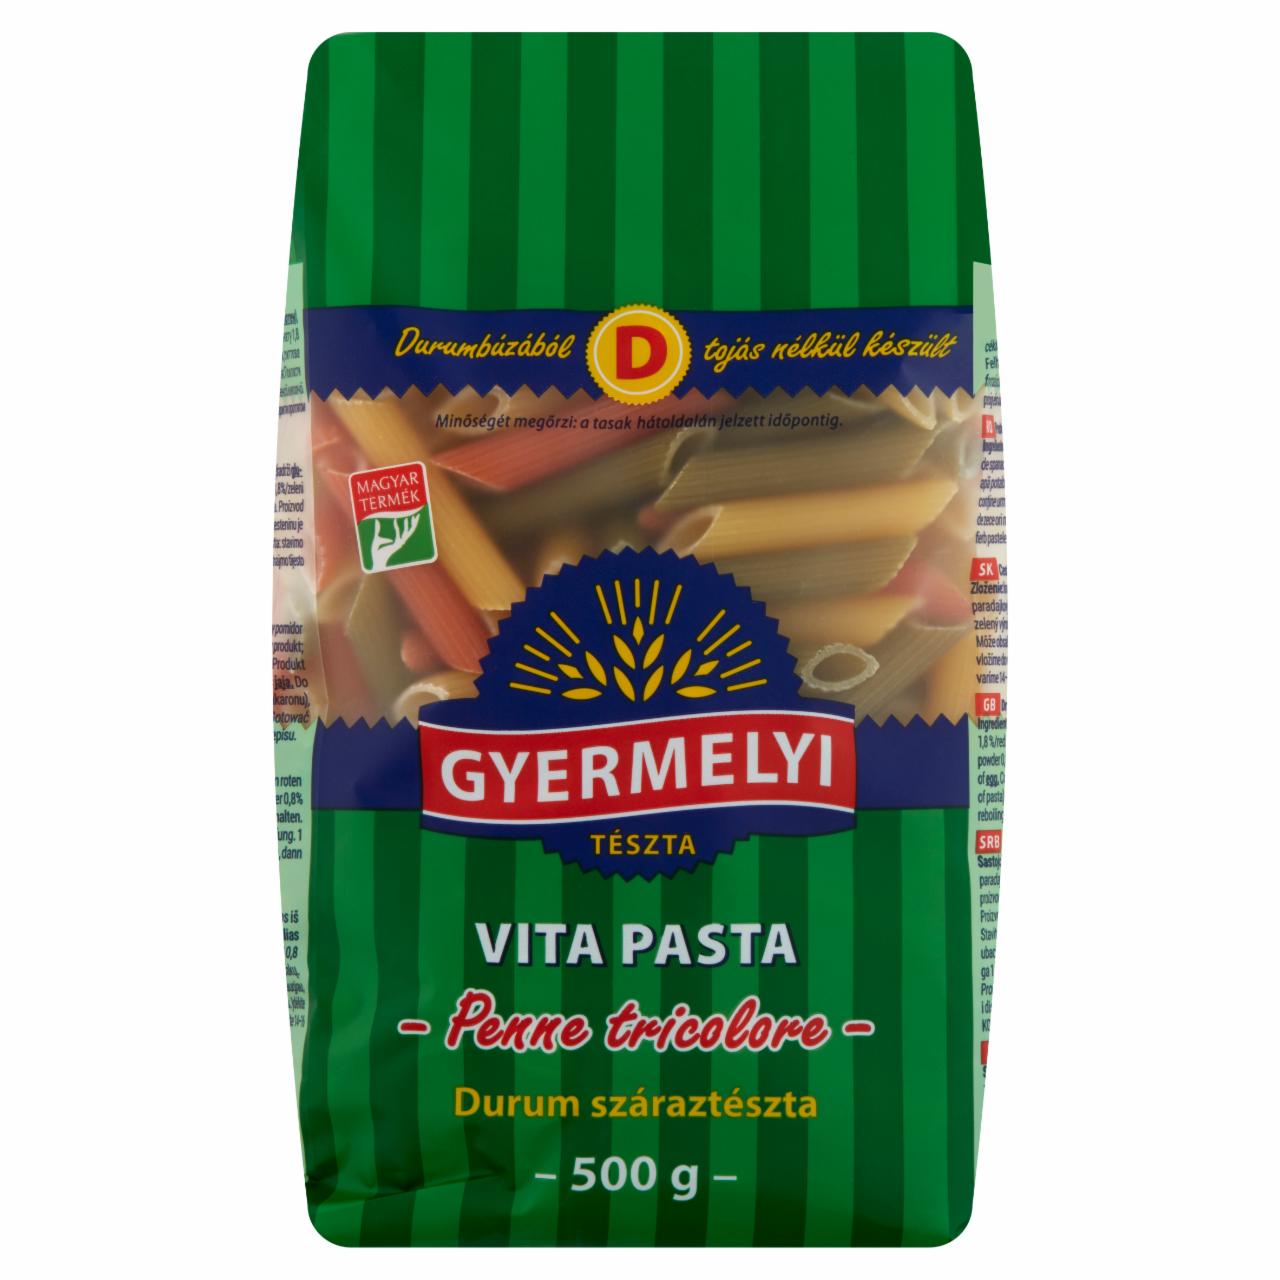 Képek - Vita Pasta Penne Tricolore durum száraztészta Gyermelyi